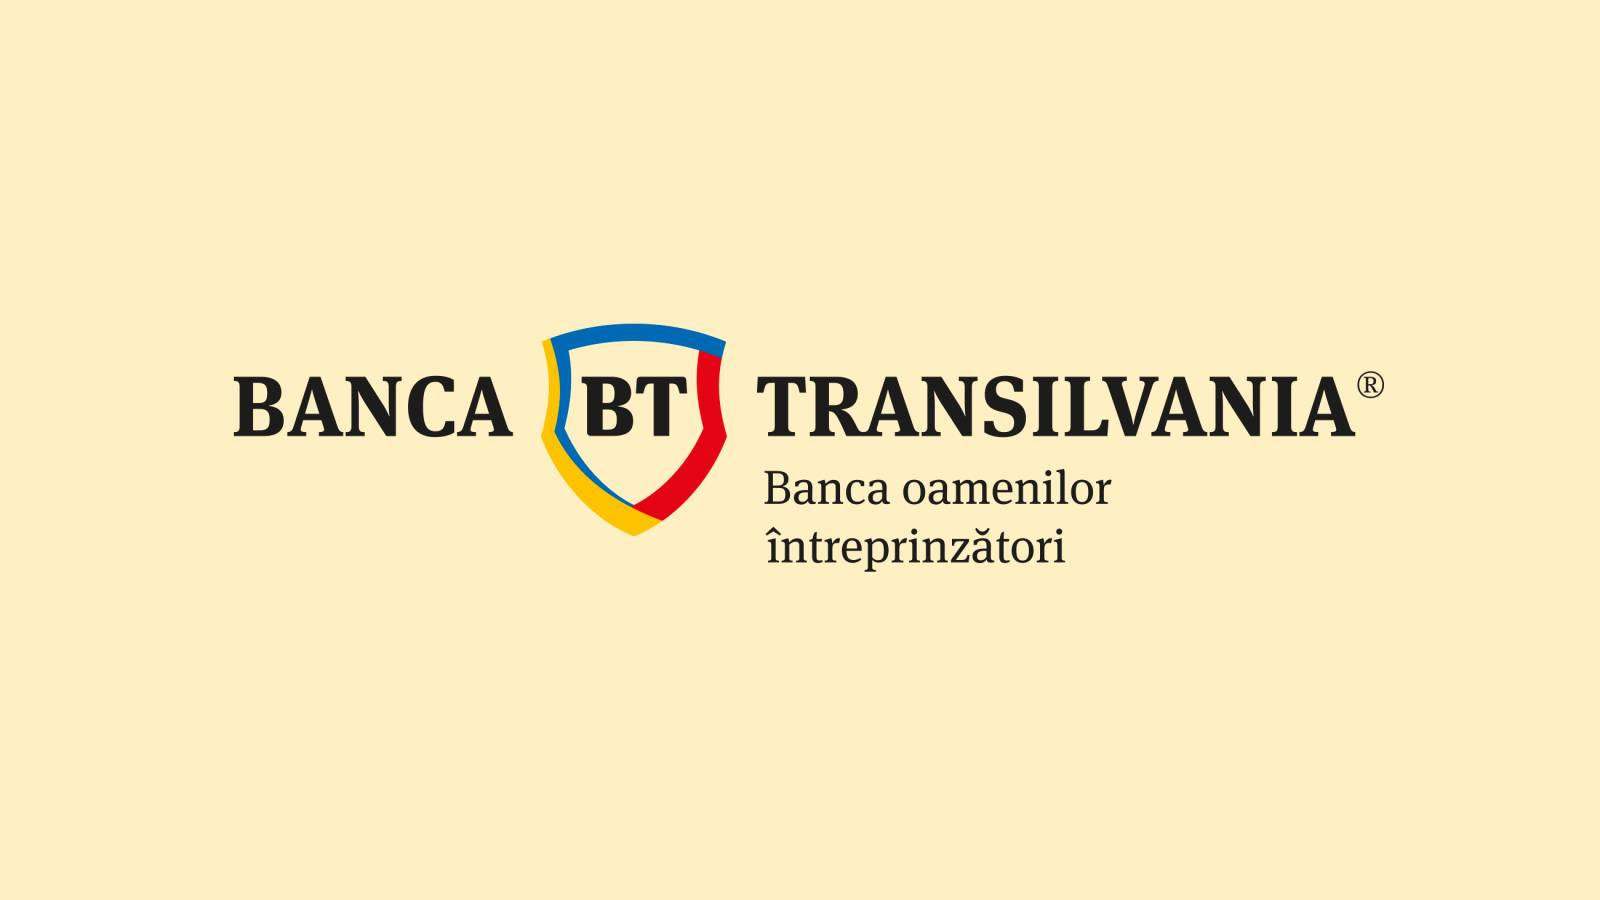 CAMBIO BANCA TRANSILVANIA Annunciato ufficialmente a tutti i clienti rumeni